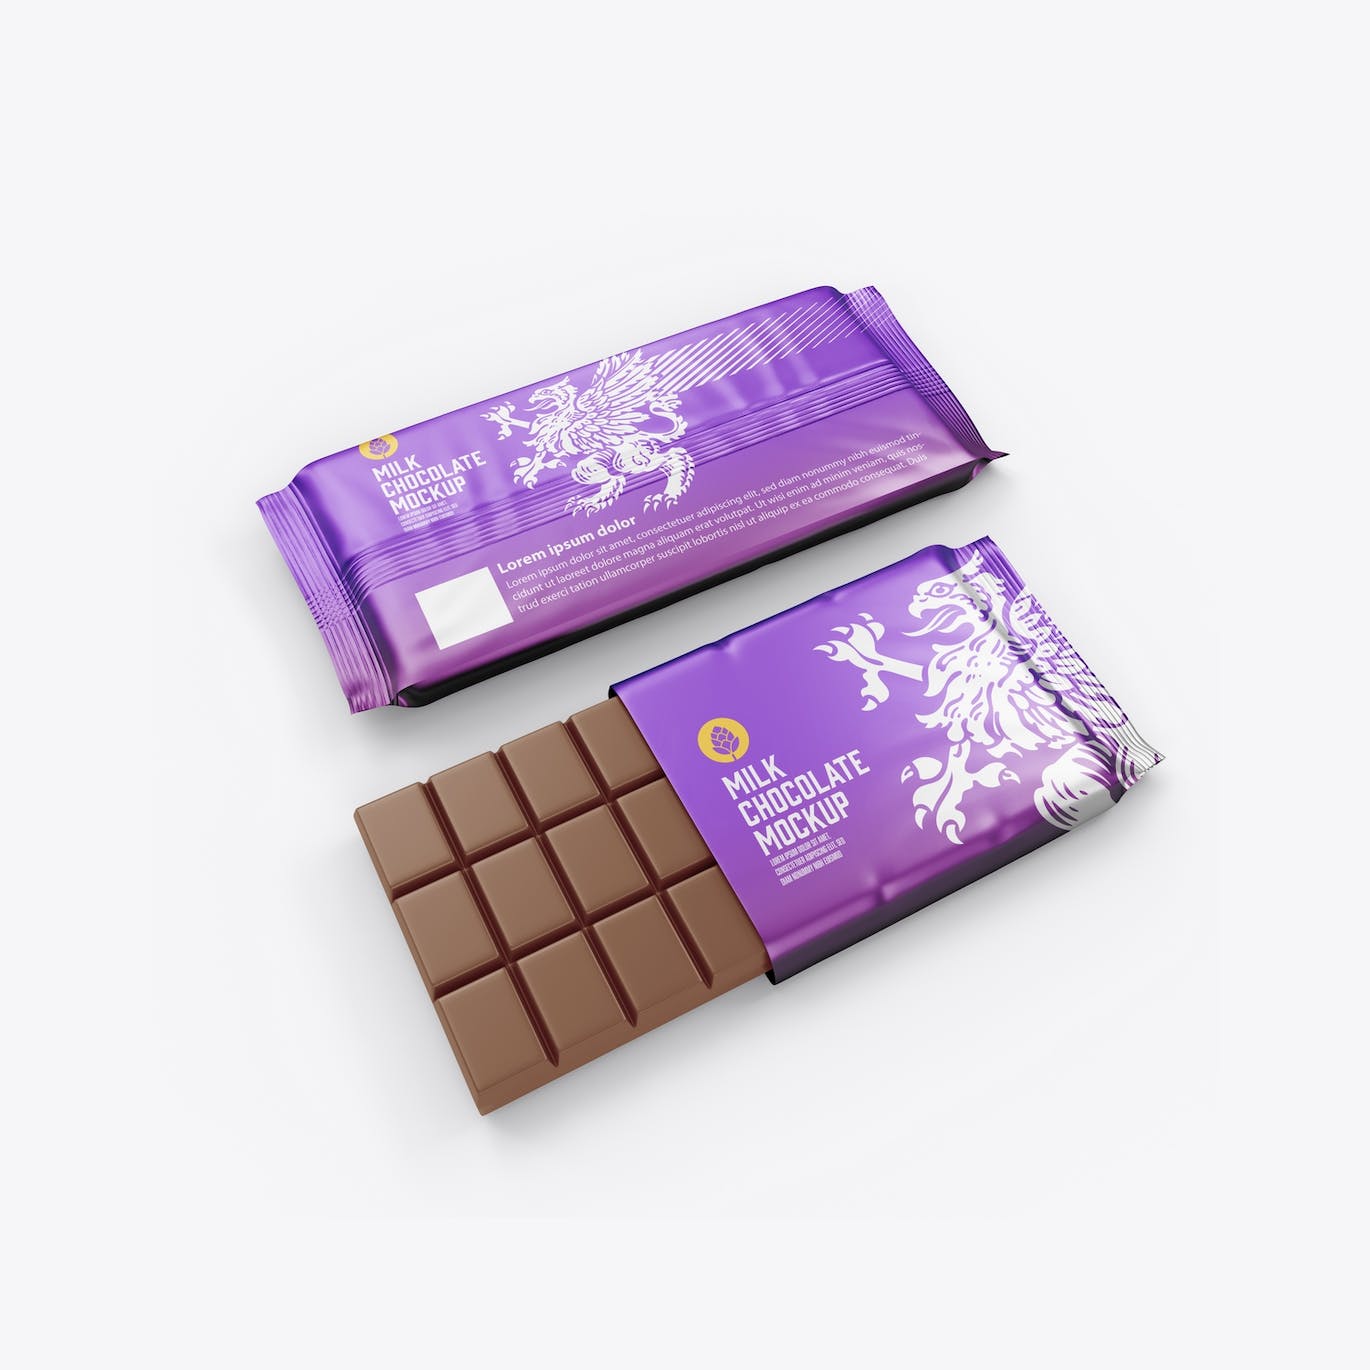 光亮的巧克力棒设计包装样机图 Set Glossy Chocolate Bar Mockup 样机素材 第4张